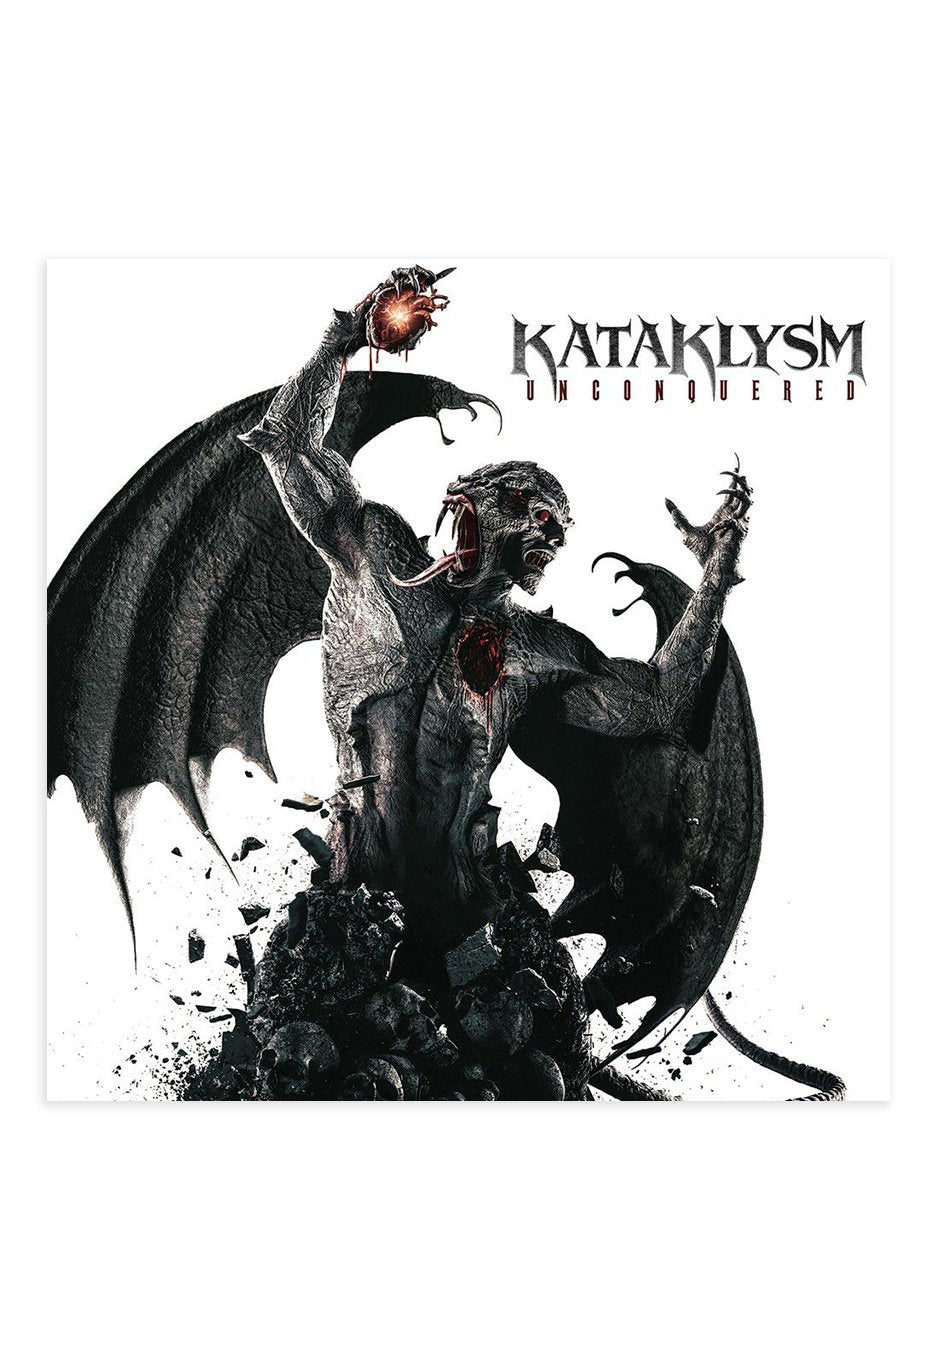 Kataklysm - Unconquered - CD